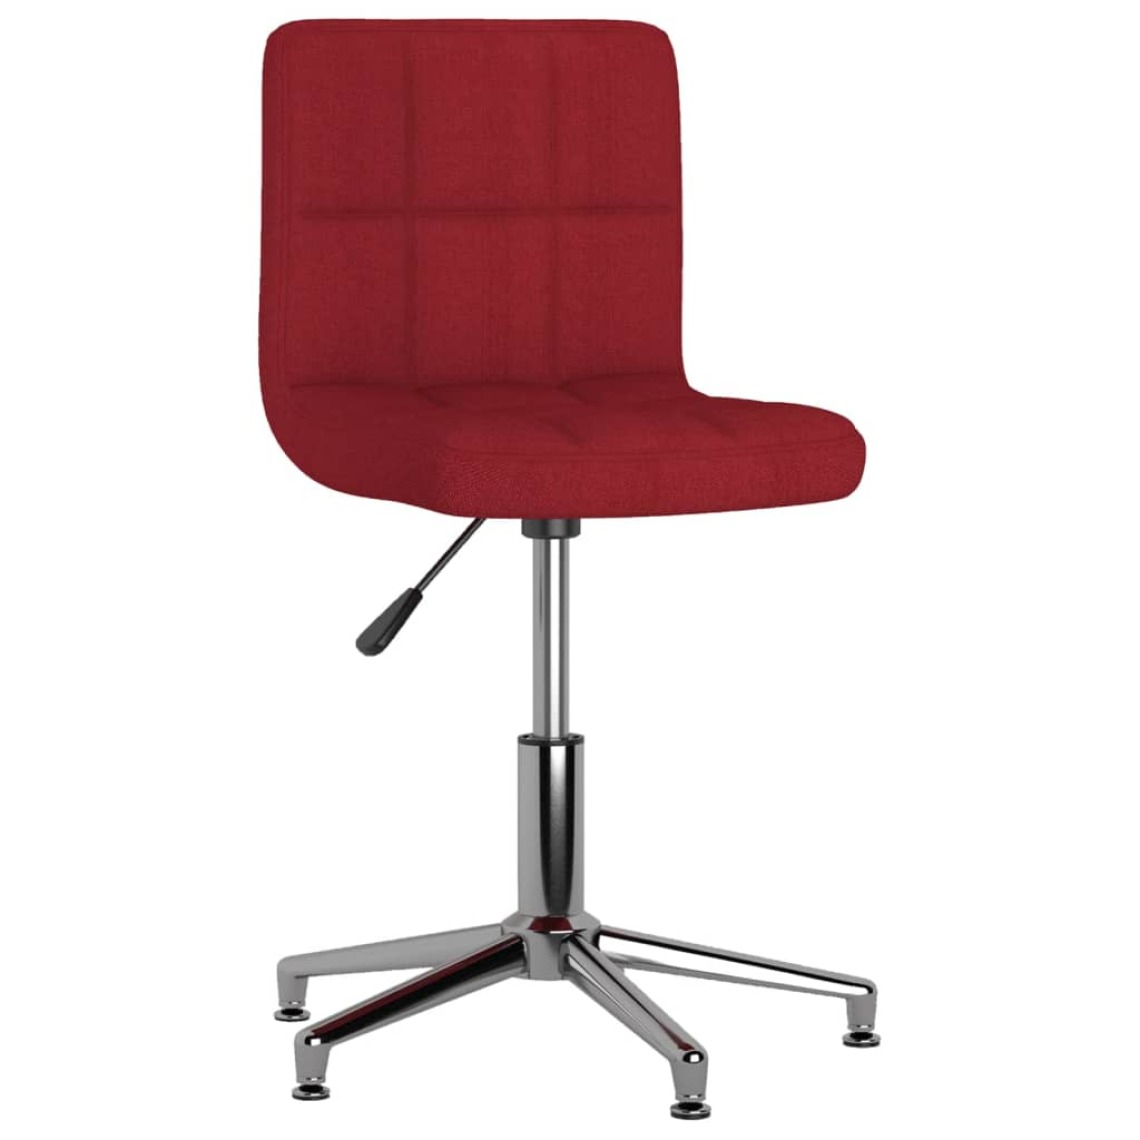 Vidaxl - vidaXL Chaise pivotante de salle à manger Rouge bordeaux Tissu - Chaises